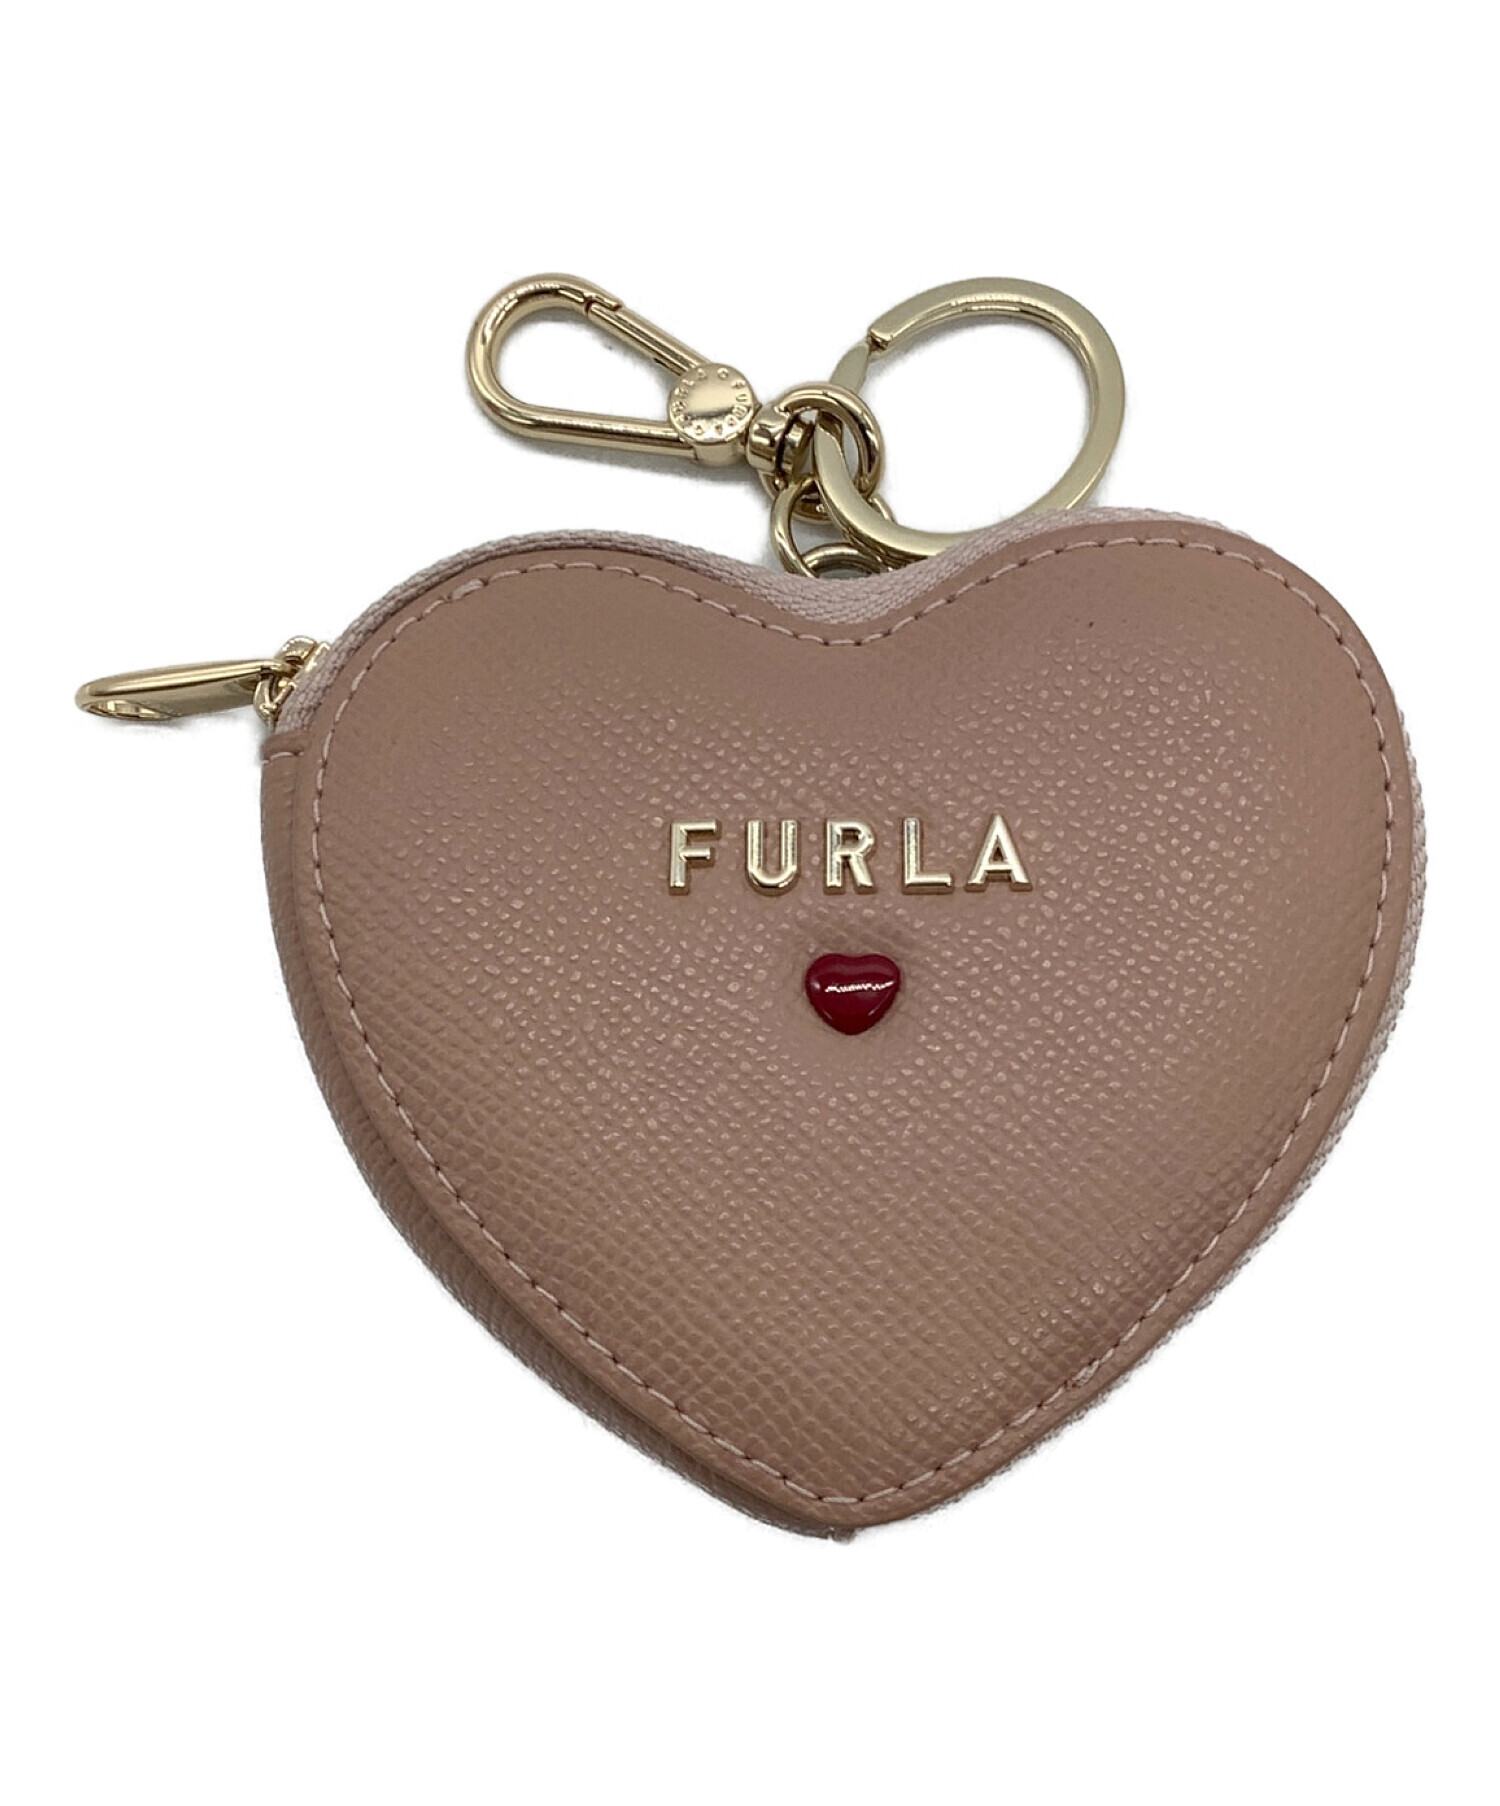 FURLA (フルラ) ハート型コインケース ピンク